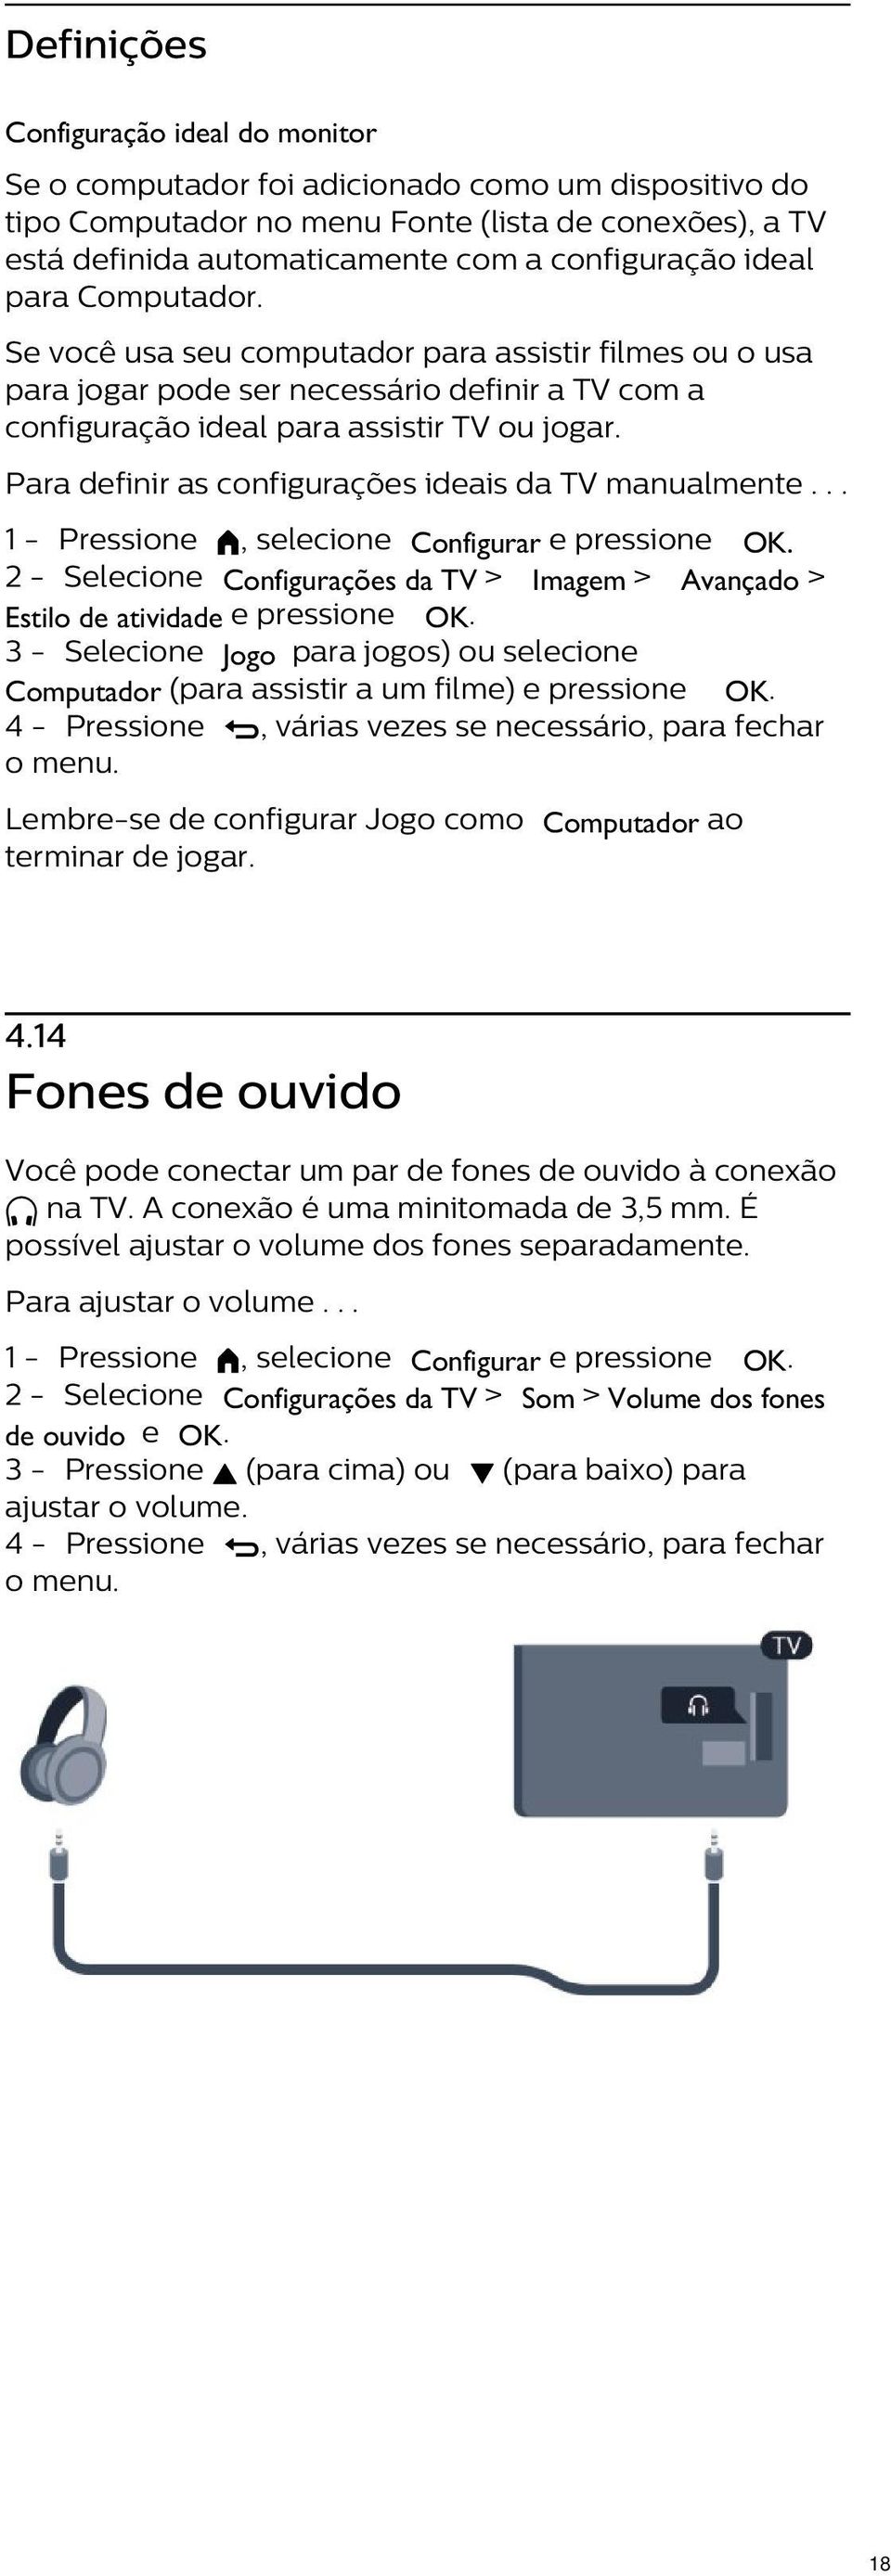 Para definir as configurações ideais da TV manualmente... 2 - Selecione Configurações da TV > Imagem > Avançado > Estilo de atividade e pressione OK.